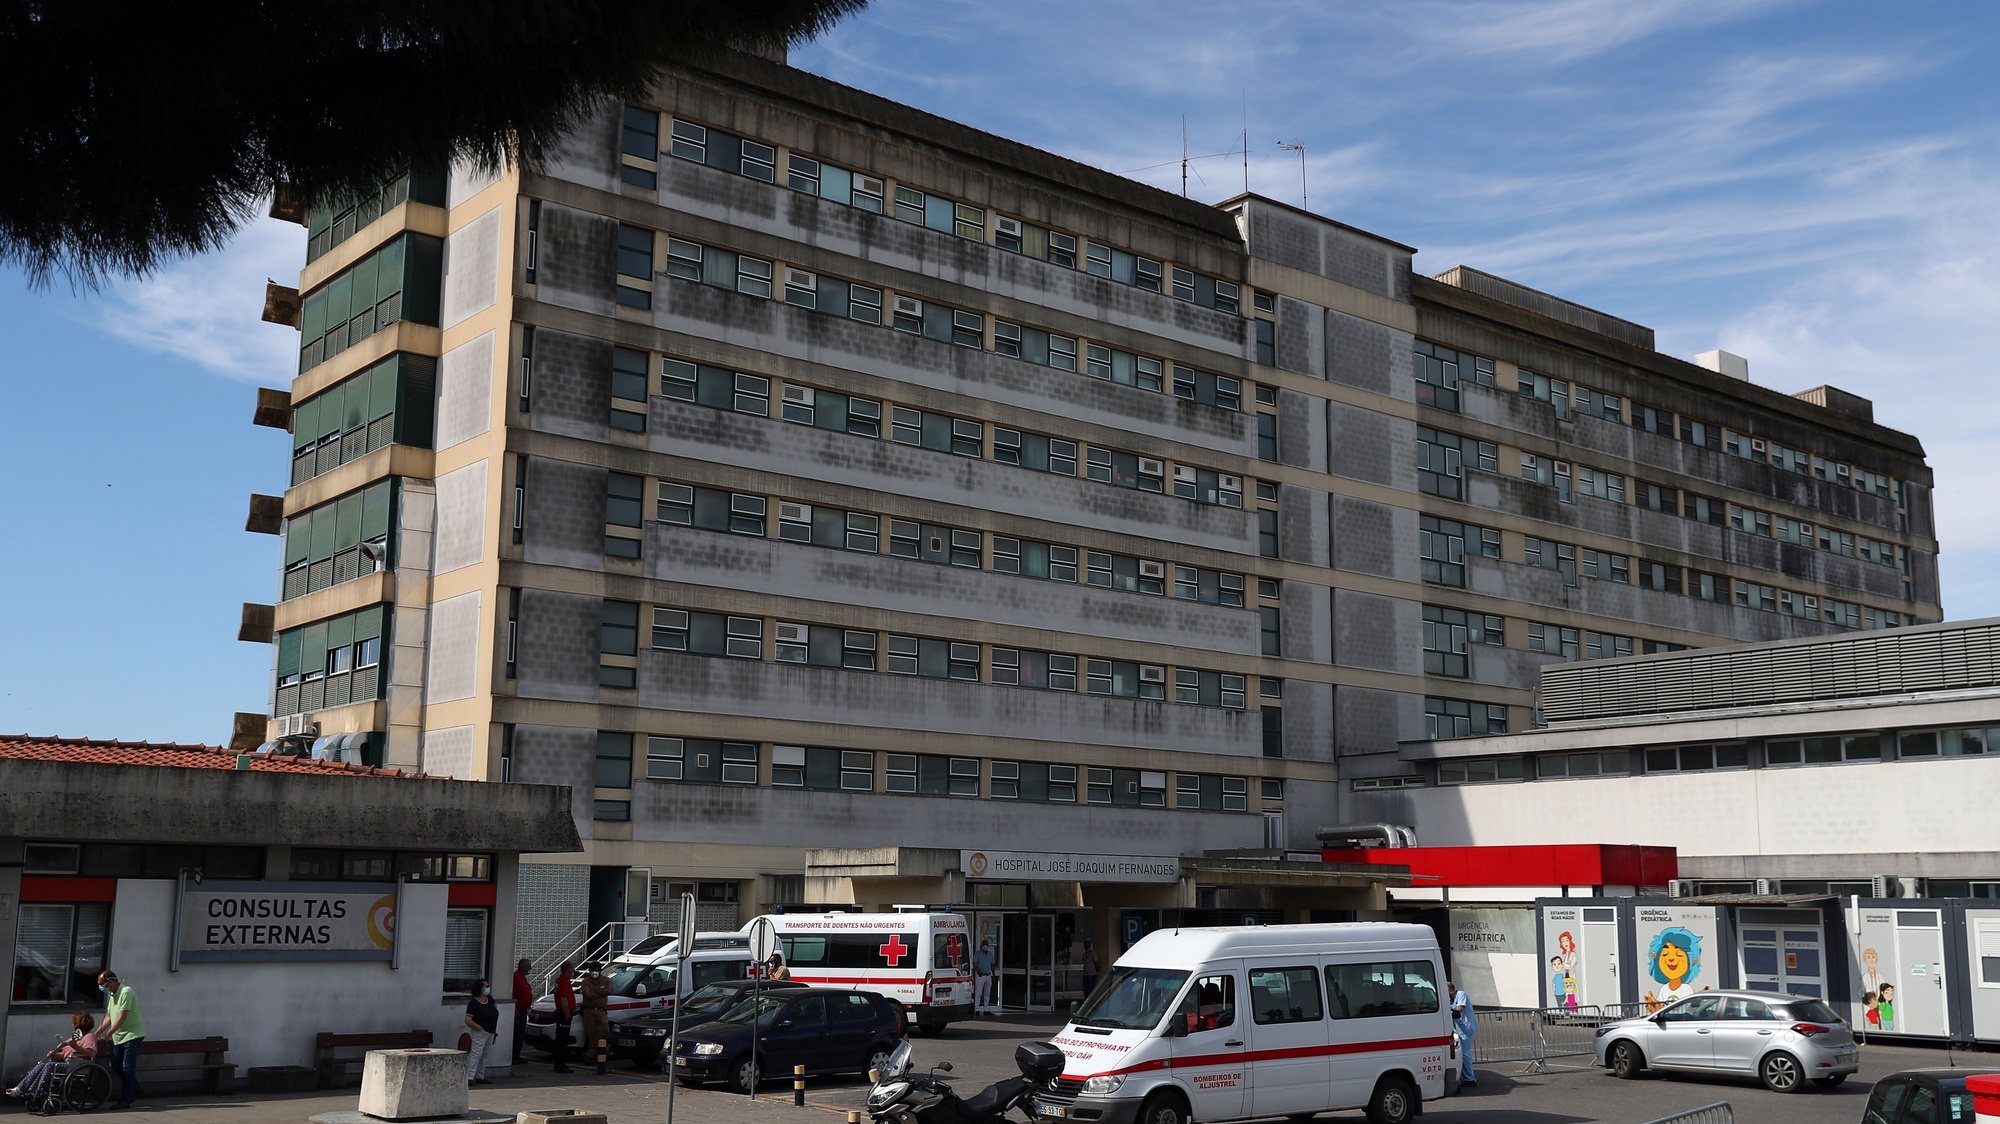 Fachada do edifício principal do hospital José Joaquim Fernandes, em Beja, 18 de maio de 2022. NUNO VEIGA/LUSA